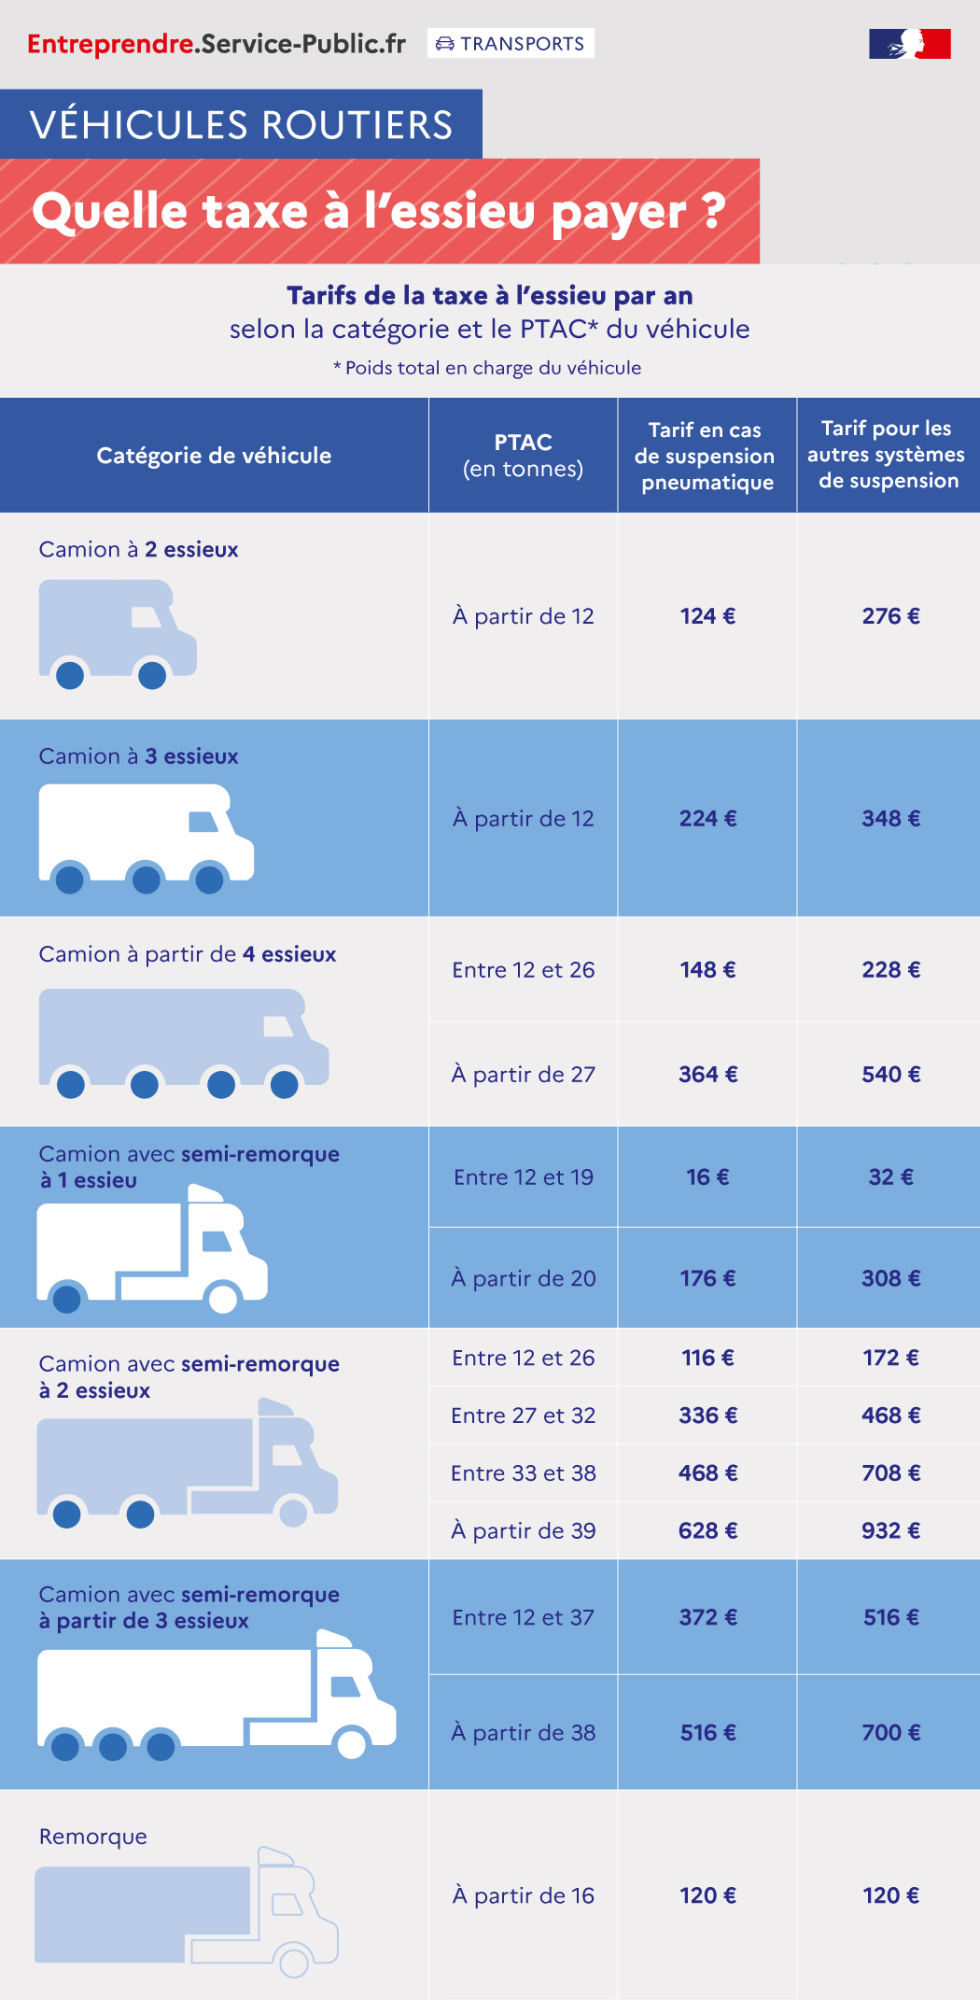 Montants de la taxe annuelle sur les véhicules lourds de transport de marchandises (ancienne taxe à l'essieu) en euros définis pour une année civile, en fonction de la catégorie de véhicule, de son poids en tonnes et du type de suspension (pneumatique ou autre)